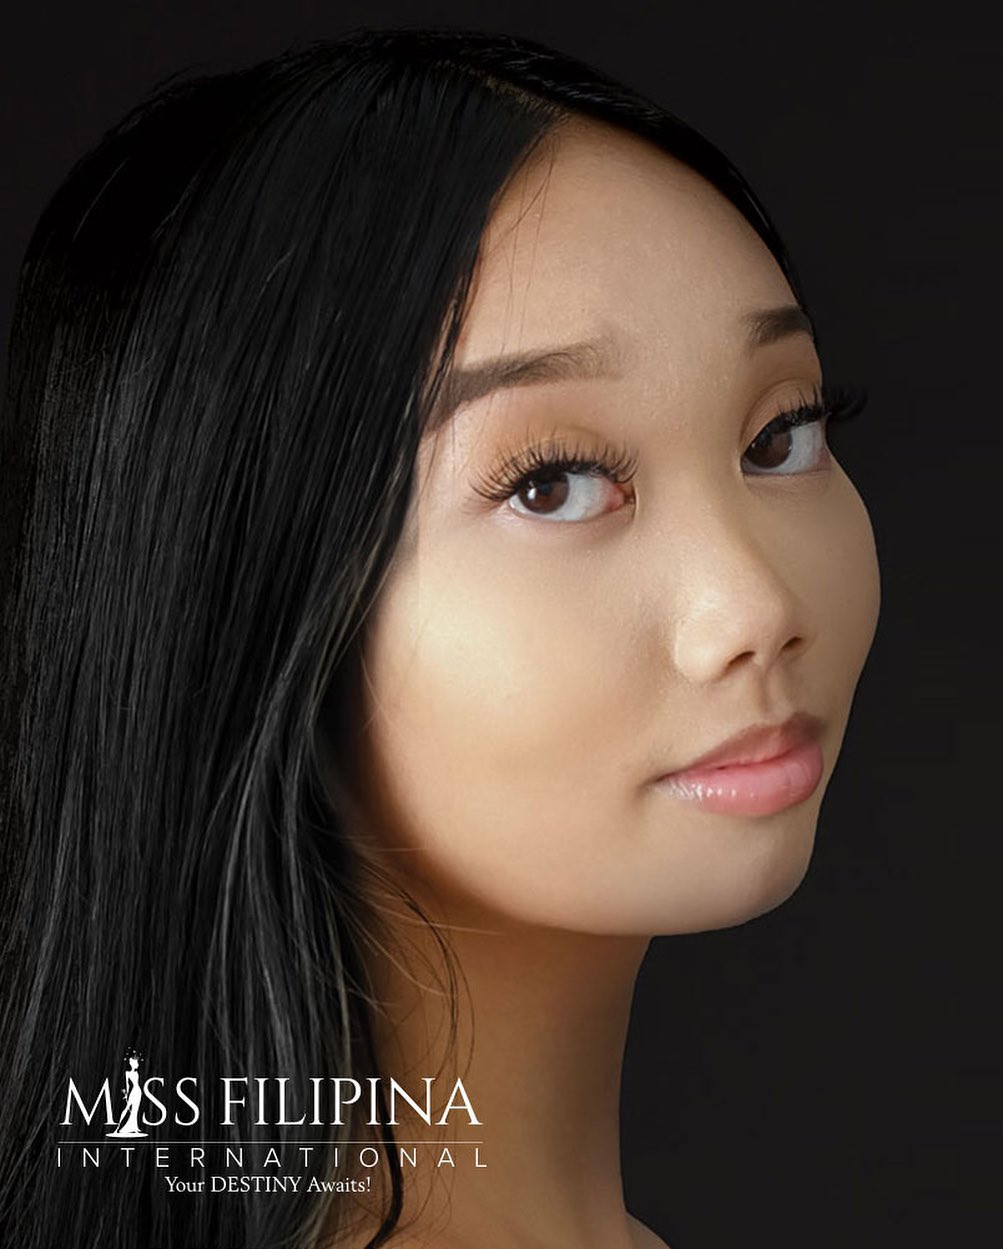 candidatas a miss filipina international 2021. final: 31 july. A52HzP